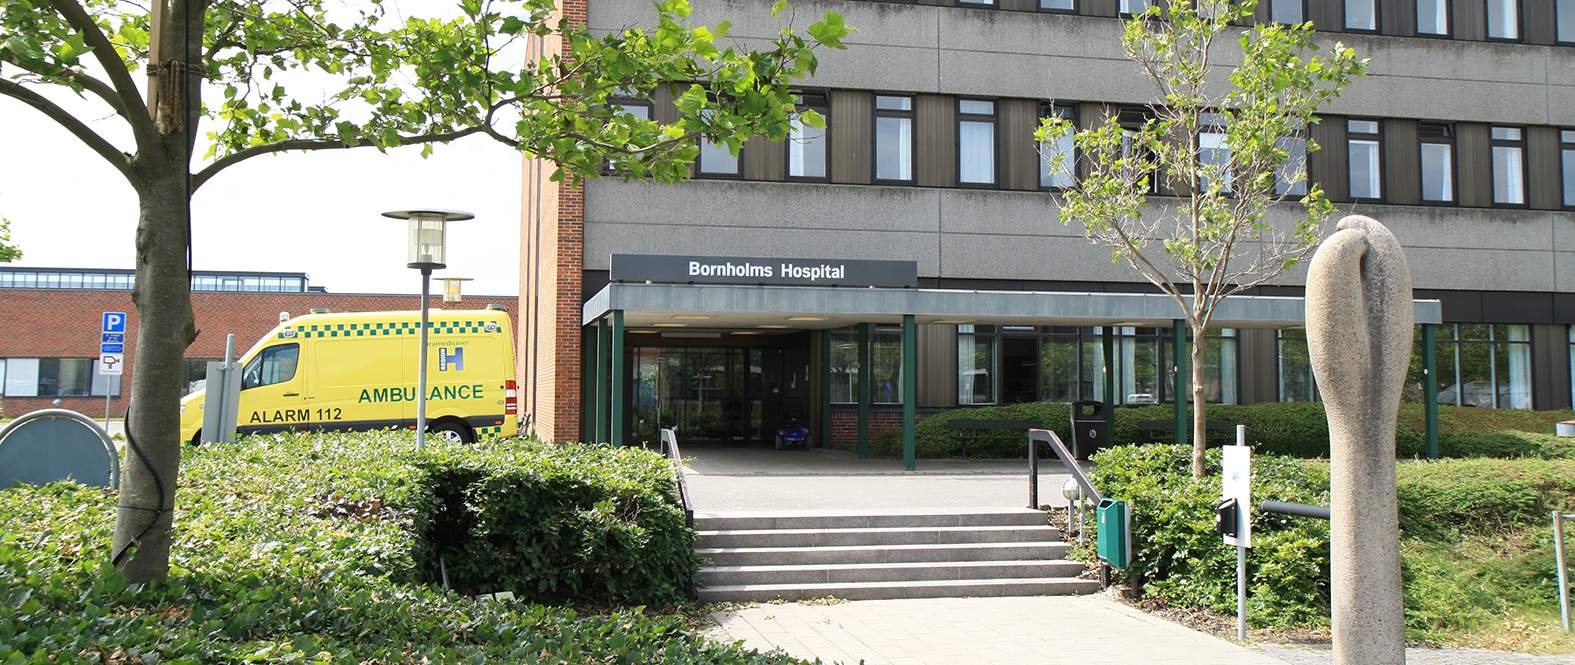 Billedet viser Bornholms Hospital.